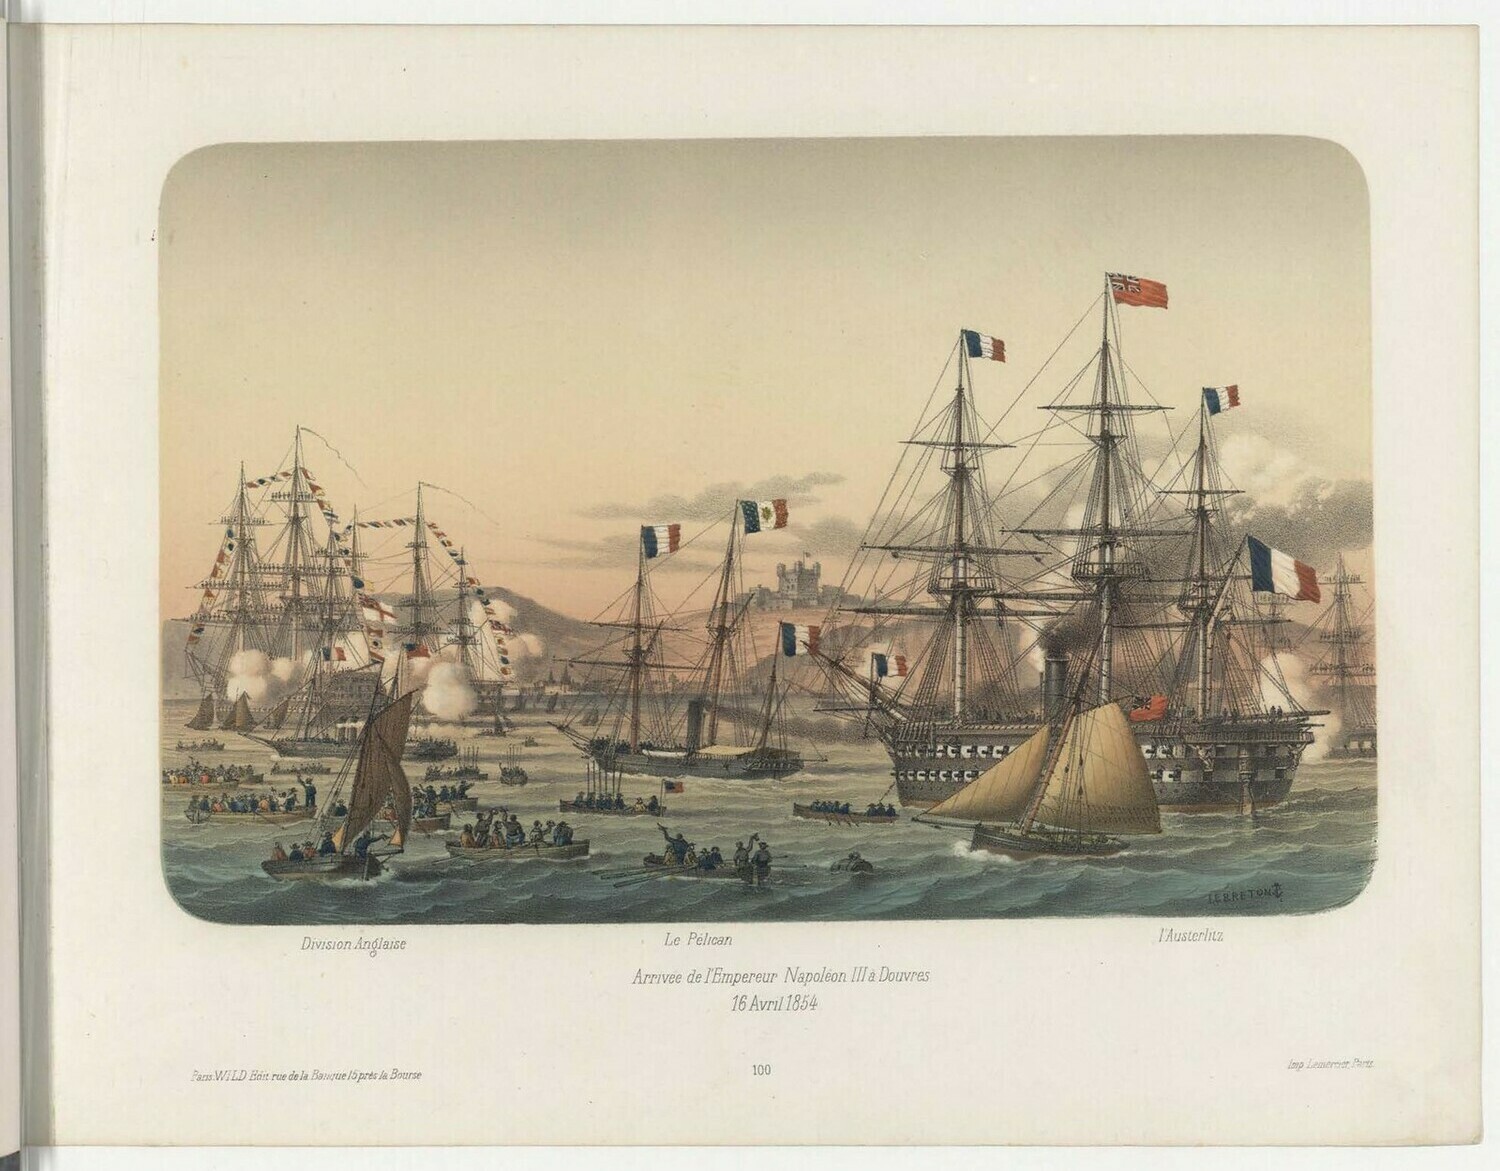 Прибытие императора Наполеона III в Дувр.